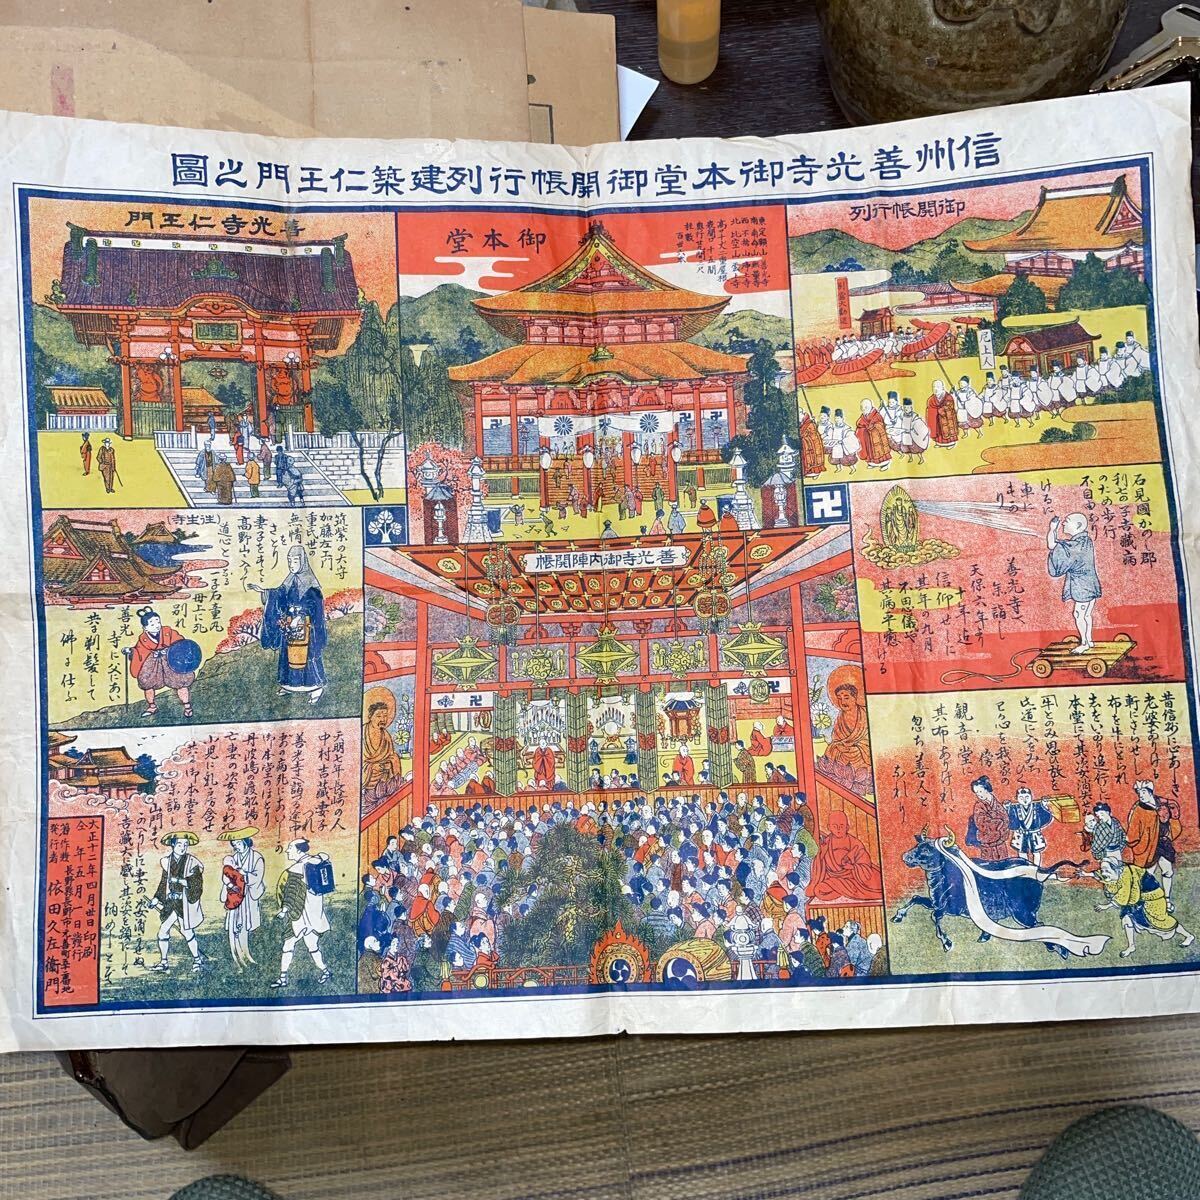 Dies ist ein Diagramm des Niomon-Tors, in der Haupthalle des Zenkoji-Tempels. Gedruckt am 30. April, 1923. Veröffentlicht von Kyusaemon Yoda., Malerei, Ukiyo-e, drucken, Bild eines berühmten Ortes